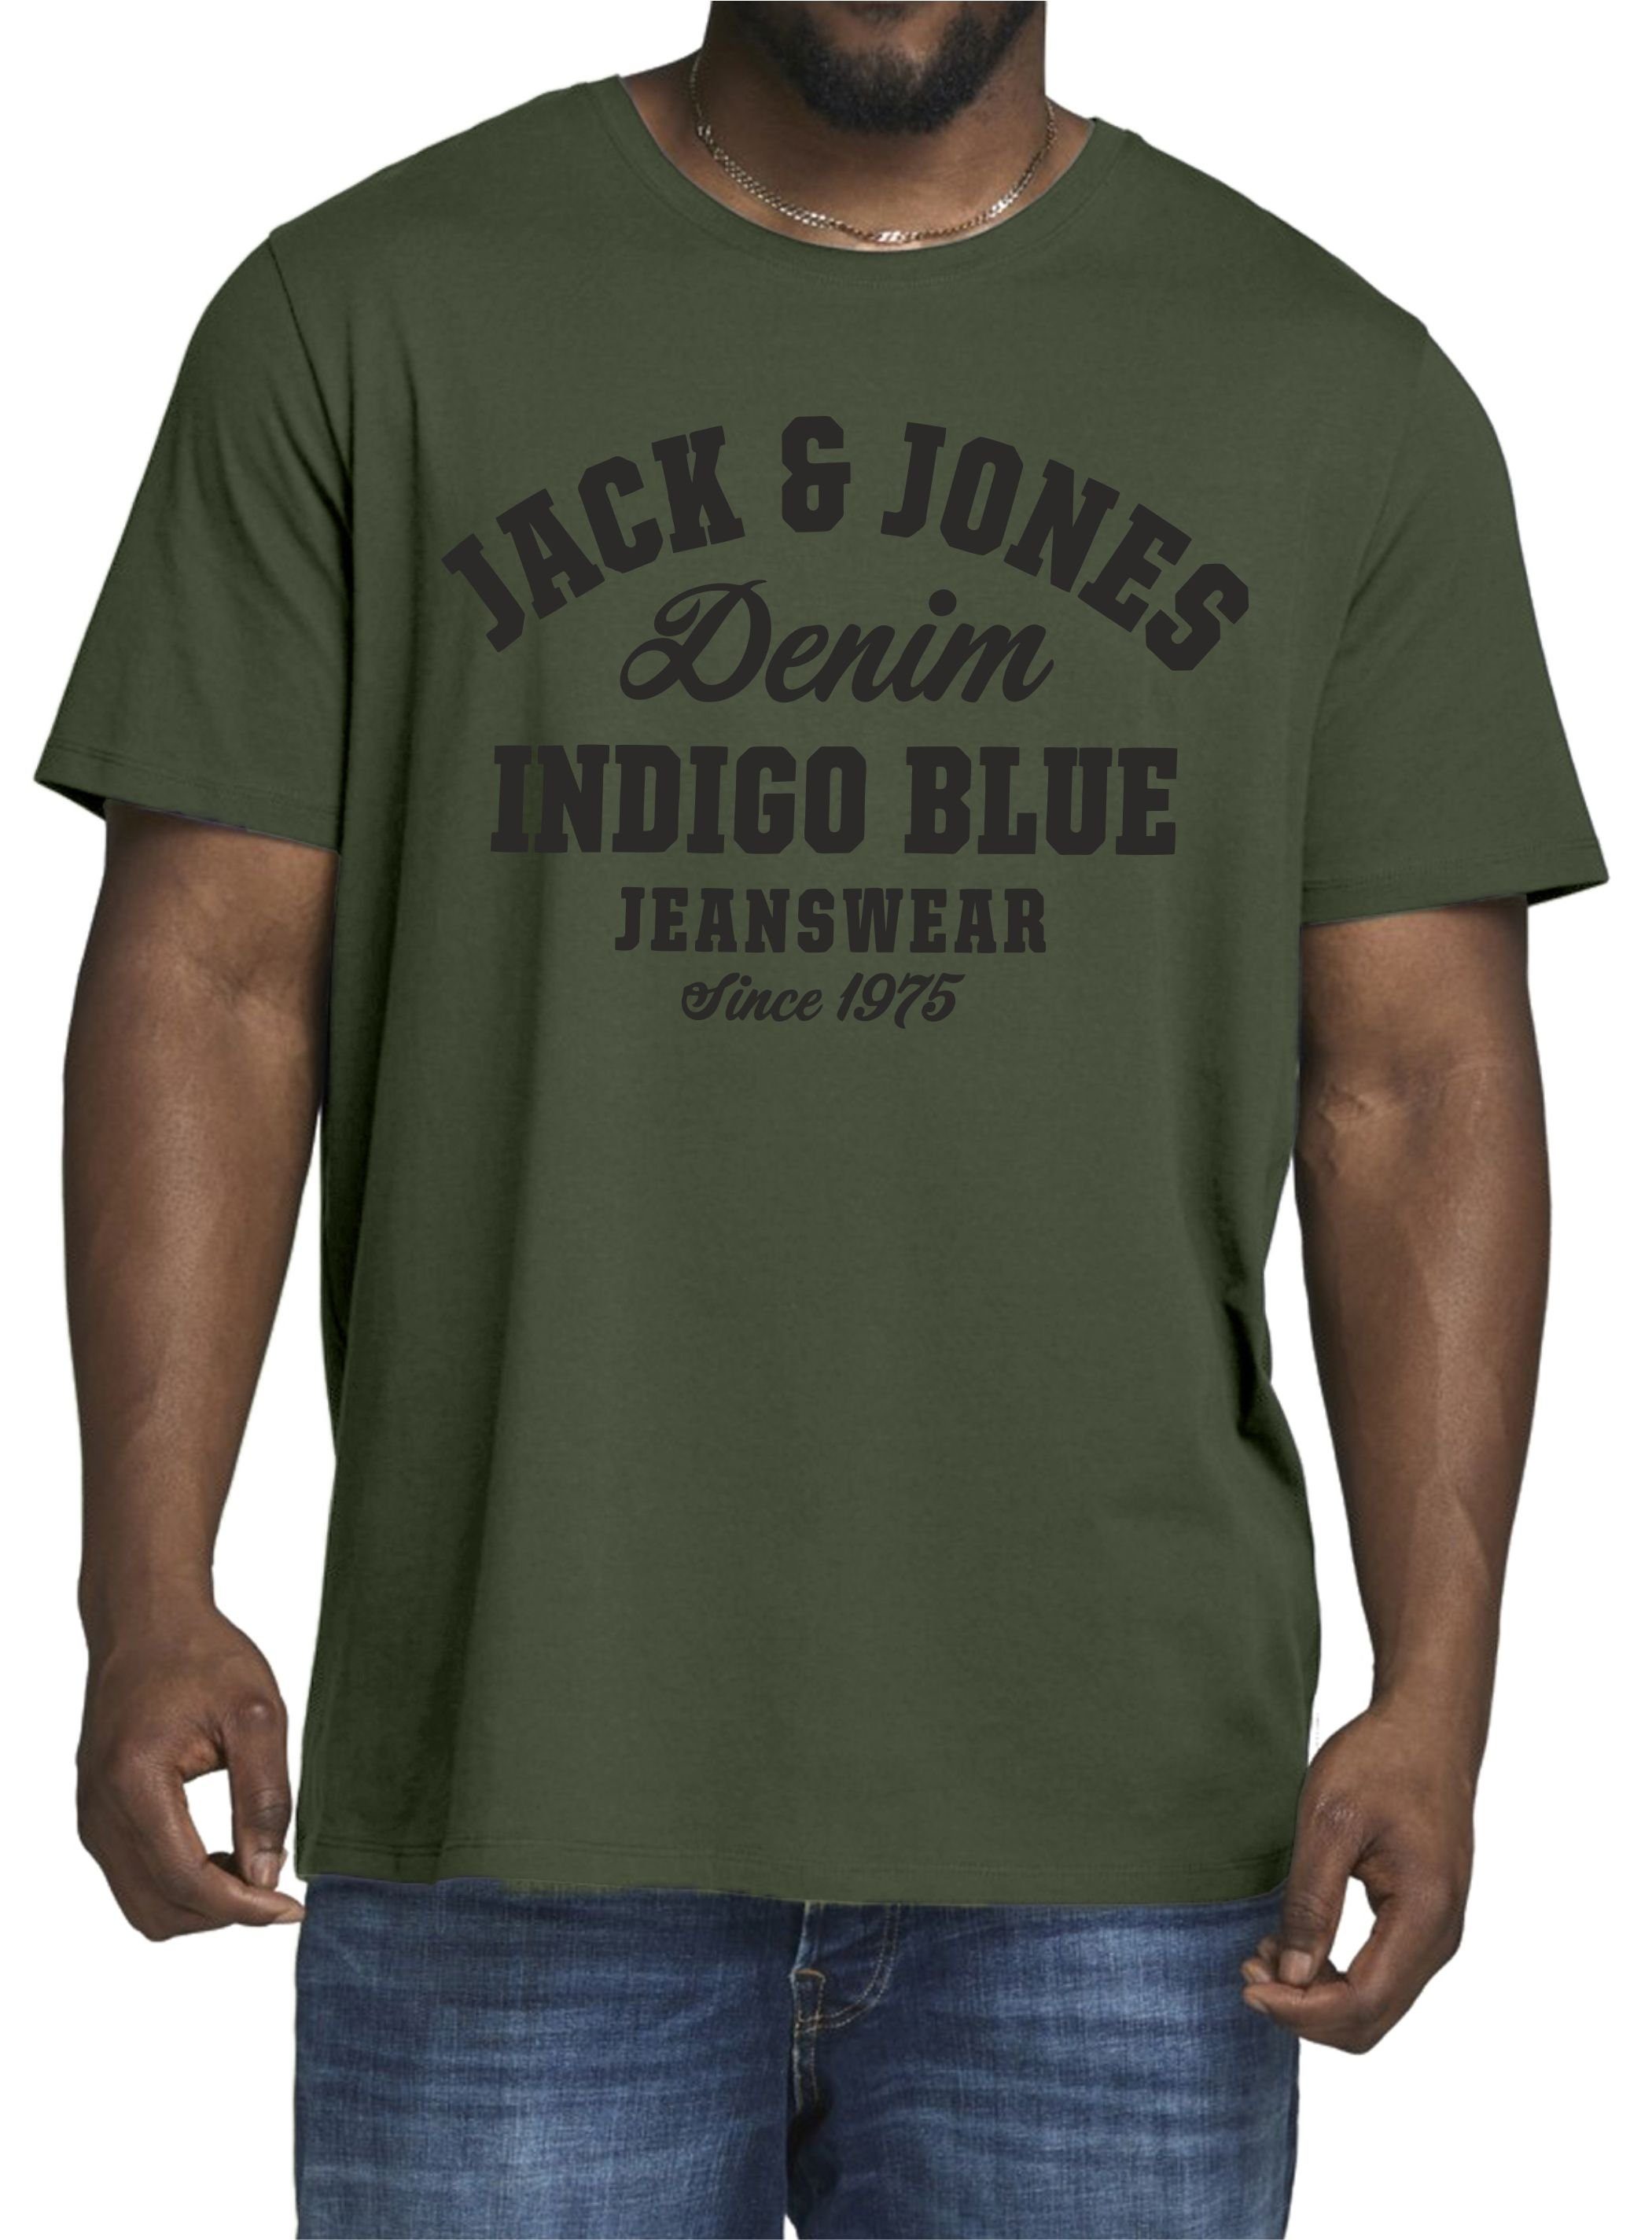 Jones aus Jack (2er-Pack) & Pack-03 in Unifarben, Baumwolle Print-Shirt